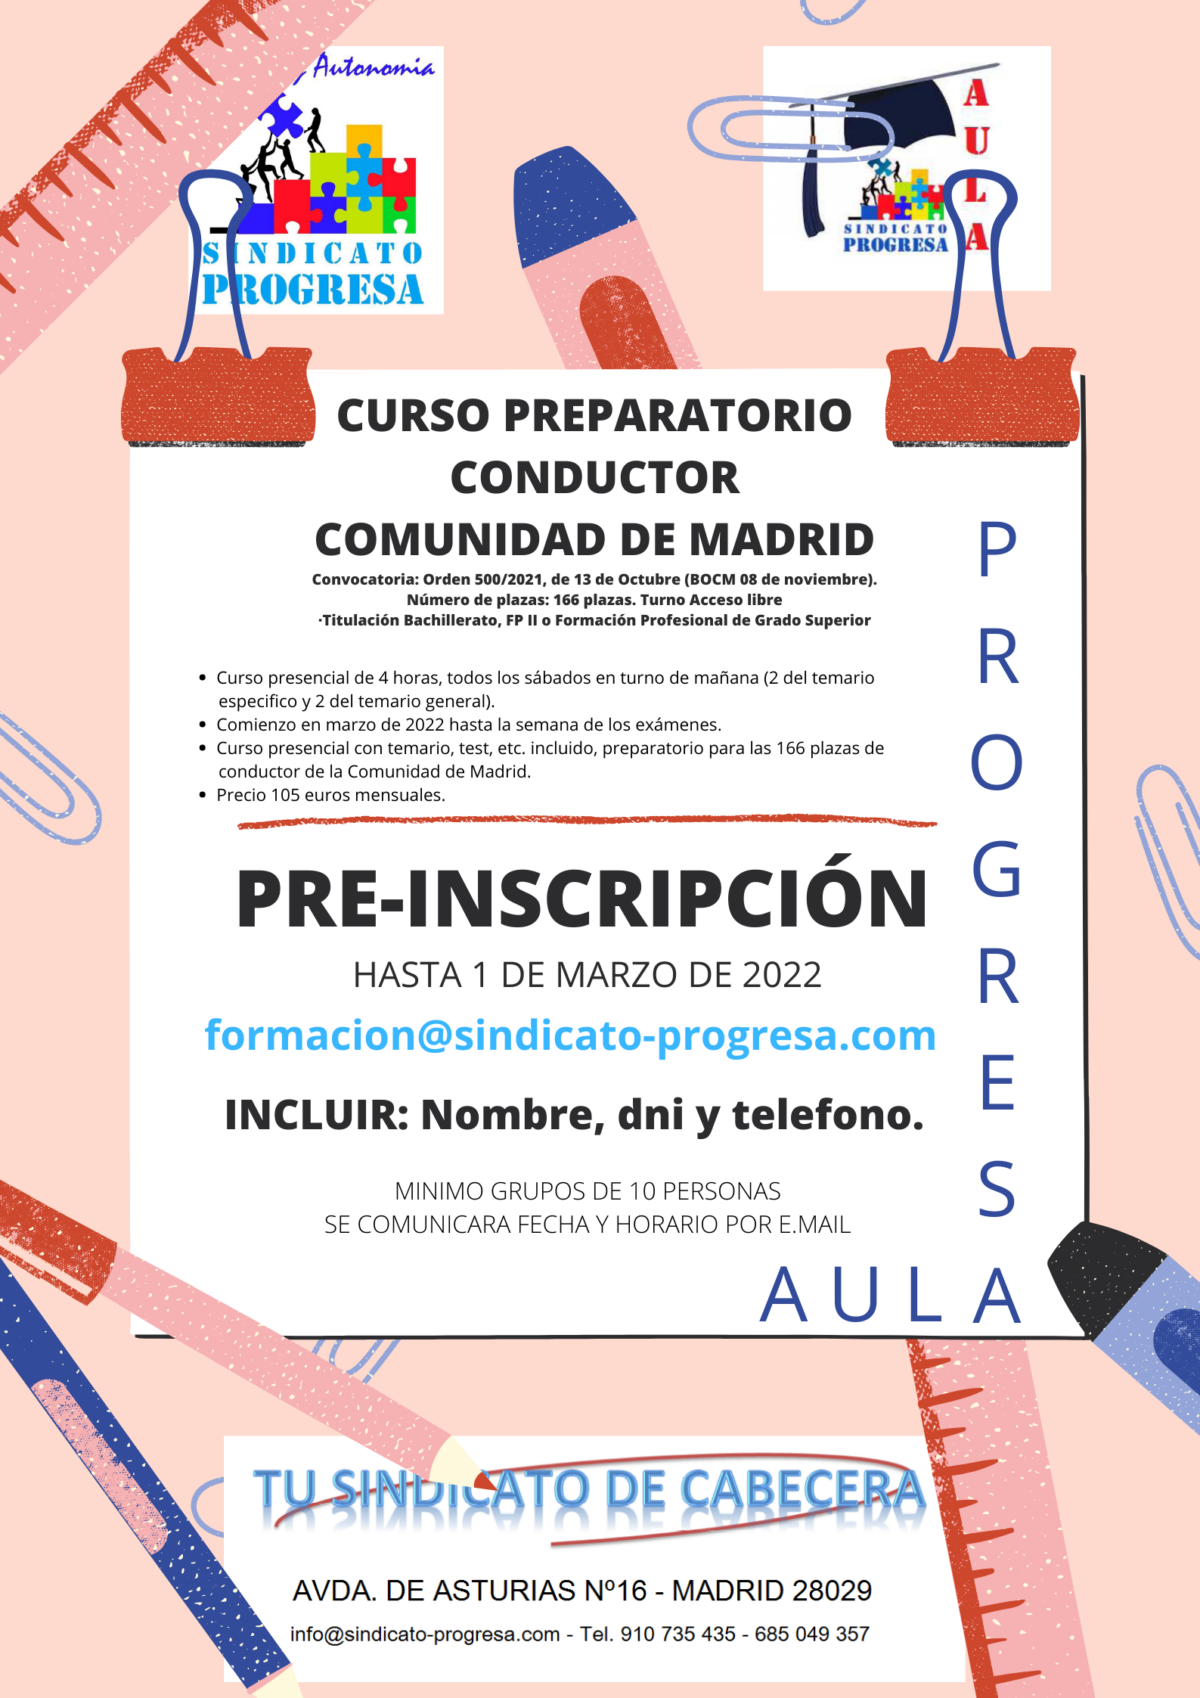 CURSO PREPARATORIO CONDUCTOR C.A.M.